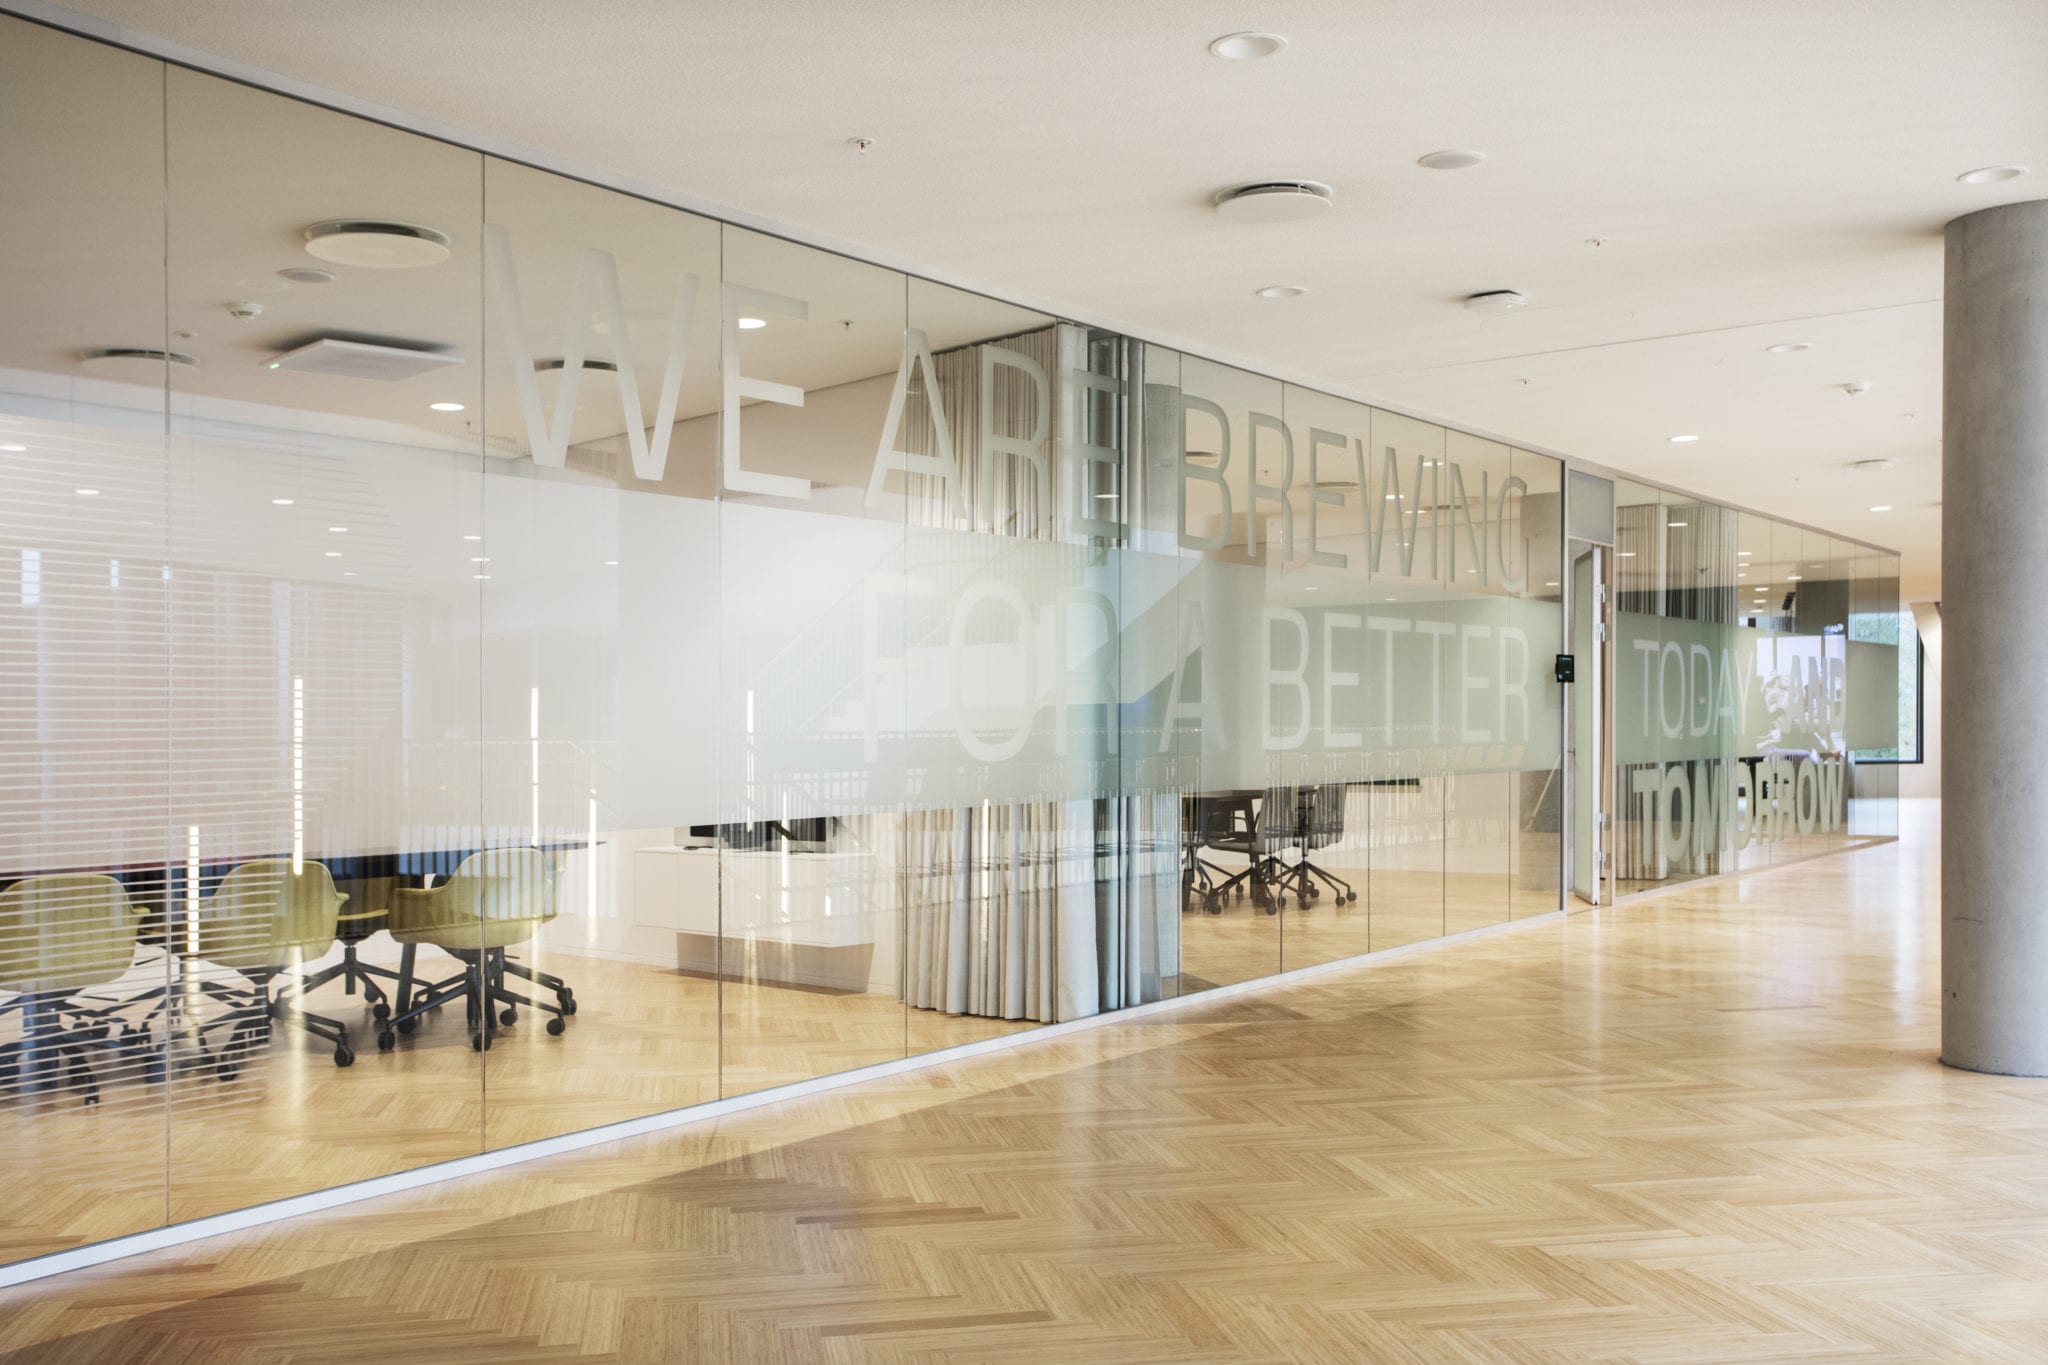 Glasproducent producerer 248 specialdøre til Carlsbergs nye hovedkontor